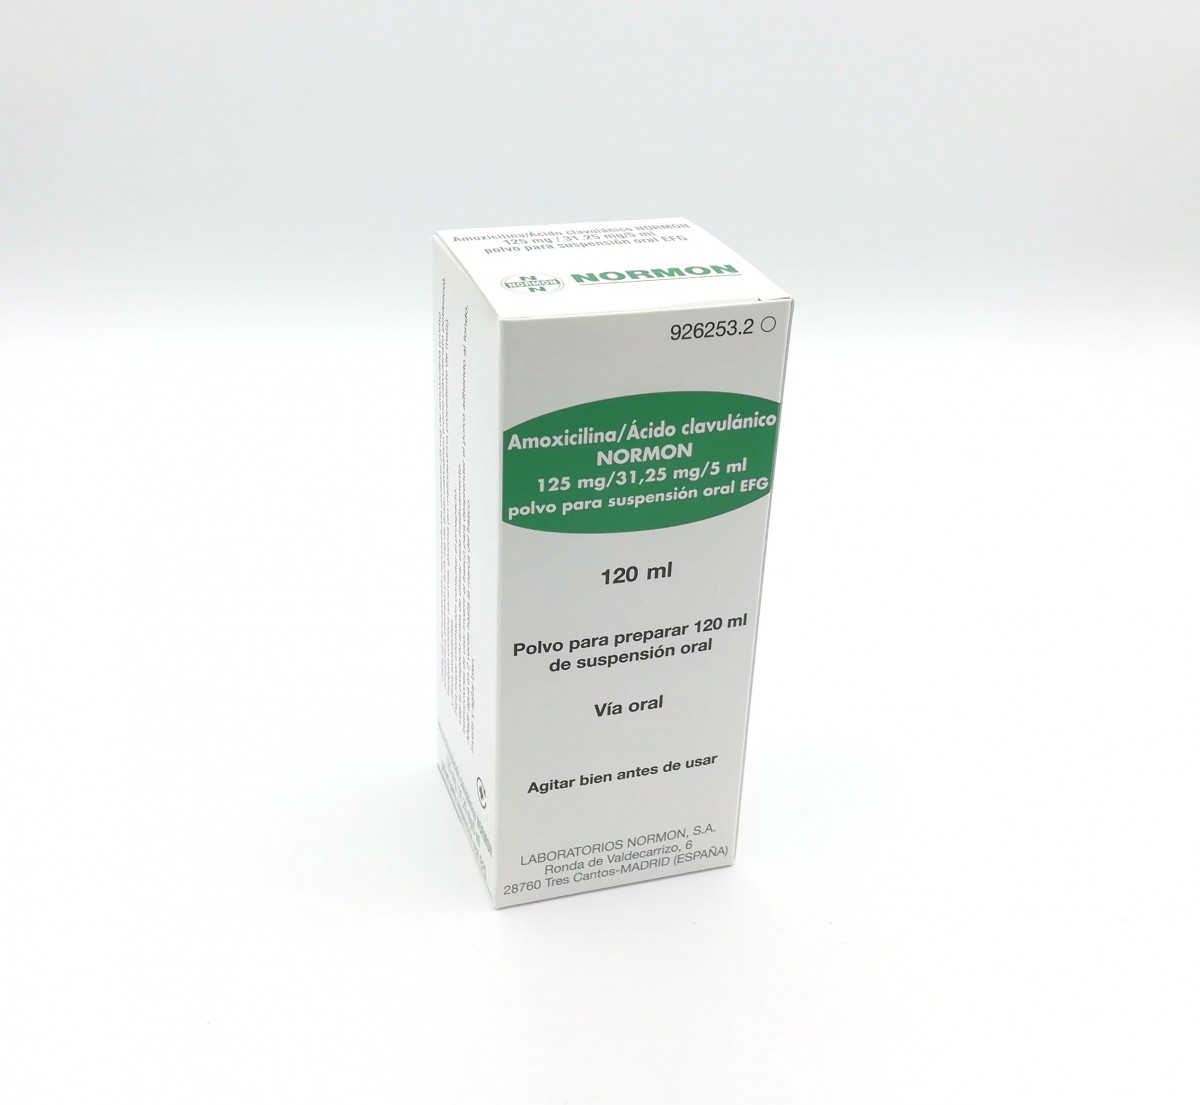 AMOXICILINA/ACIDO CLAVULANICO NORMON 125 mg/31,25 mg/5 ml POLVO PARA SUSPENSION ORAL EFG, 20 frascos de 120 ml fotografía del envase.